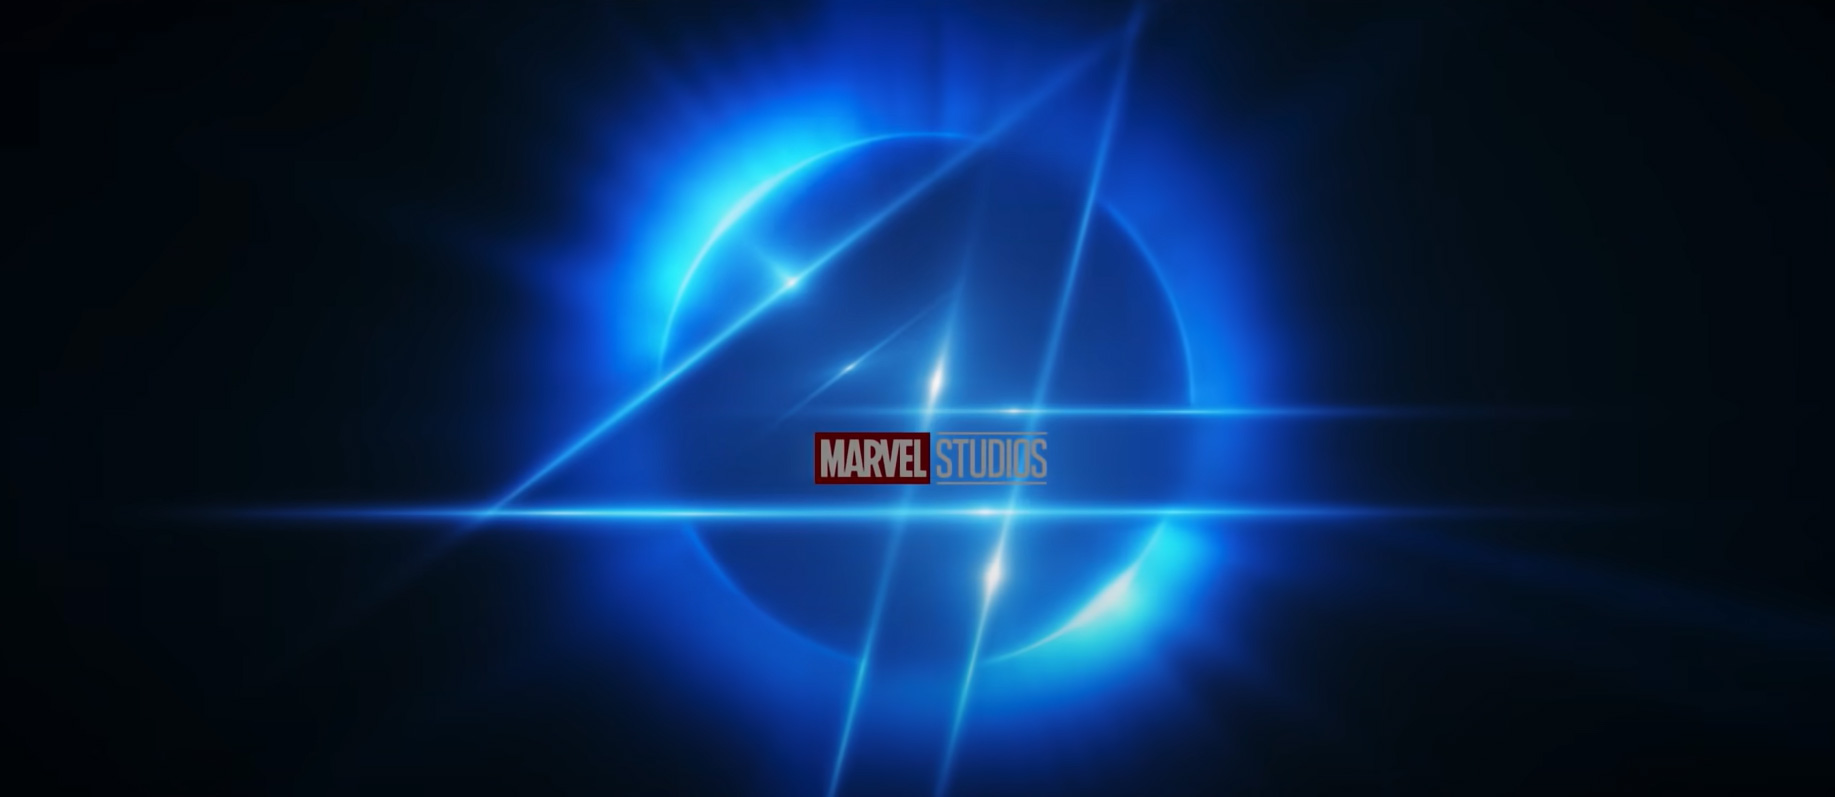 Universo Cinematografico Marvel, Fase 4: Marvel Studios celebra il passaggio dalla Fase 3